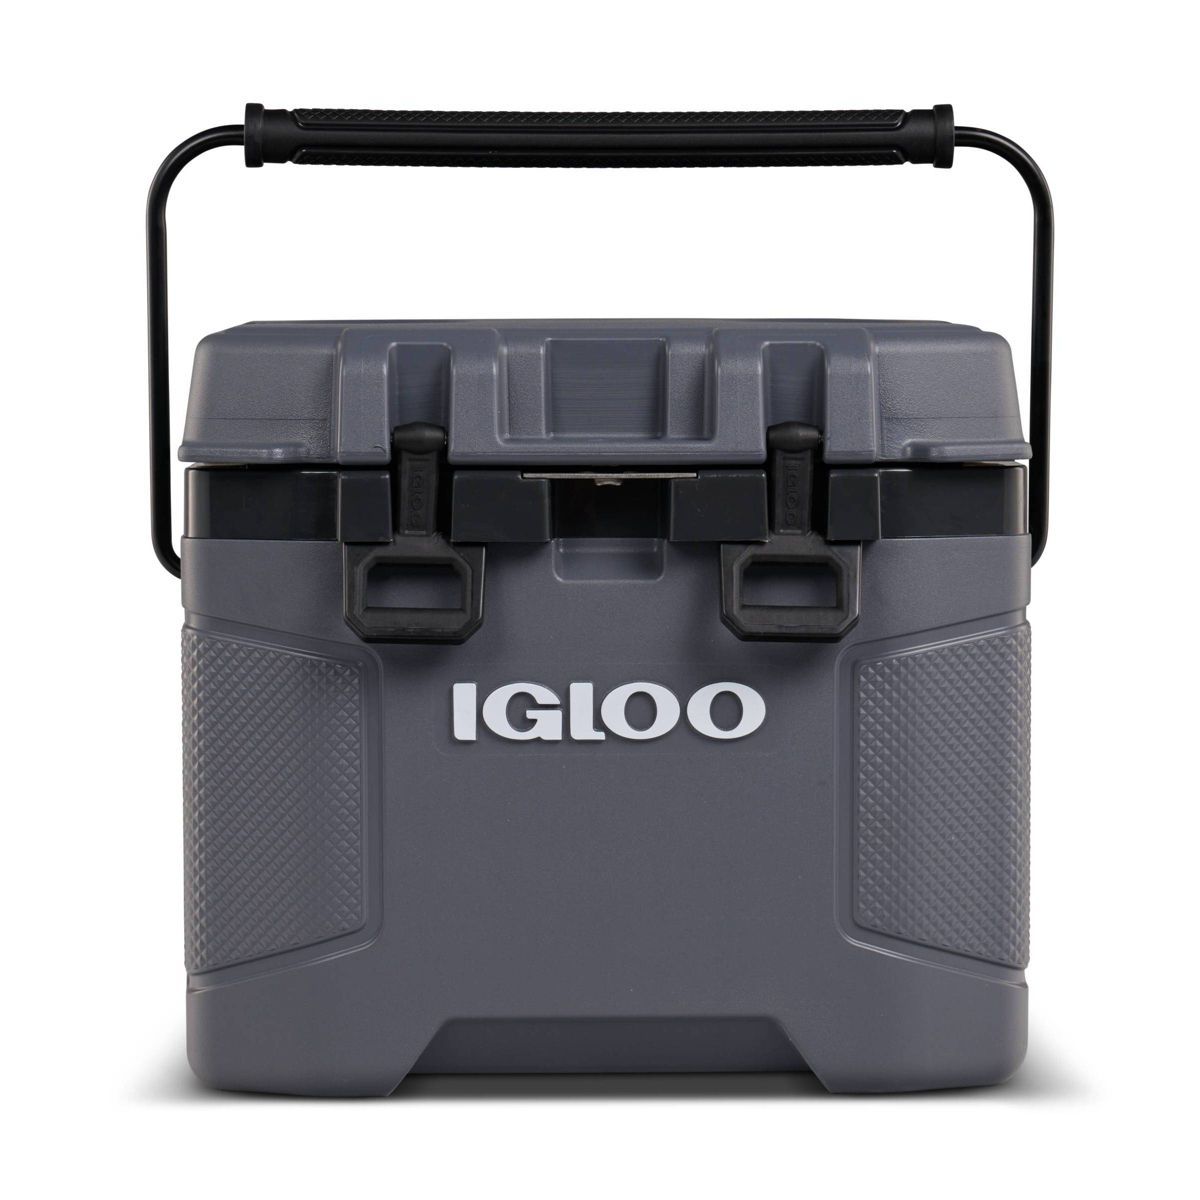 Igloo Trailmate 25qt Hard Sided Cooler | Target